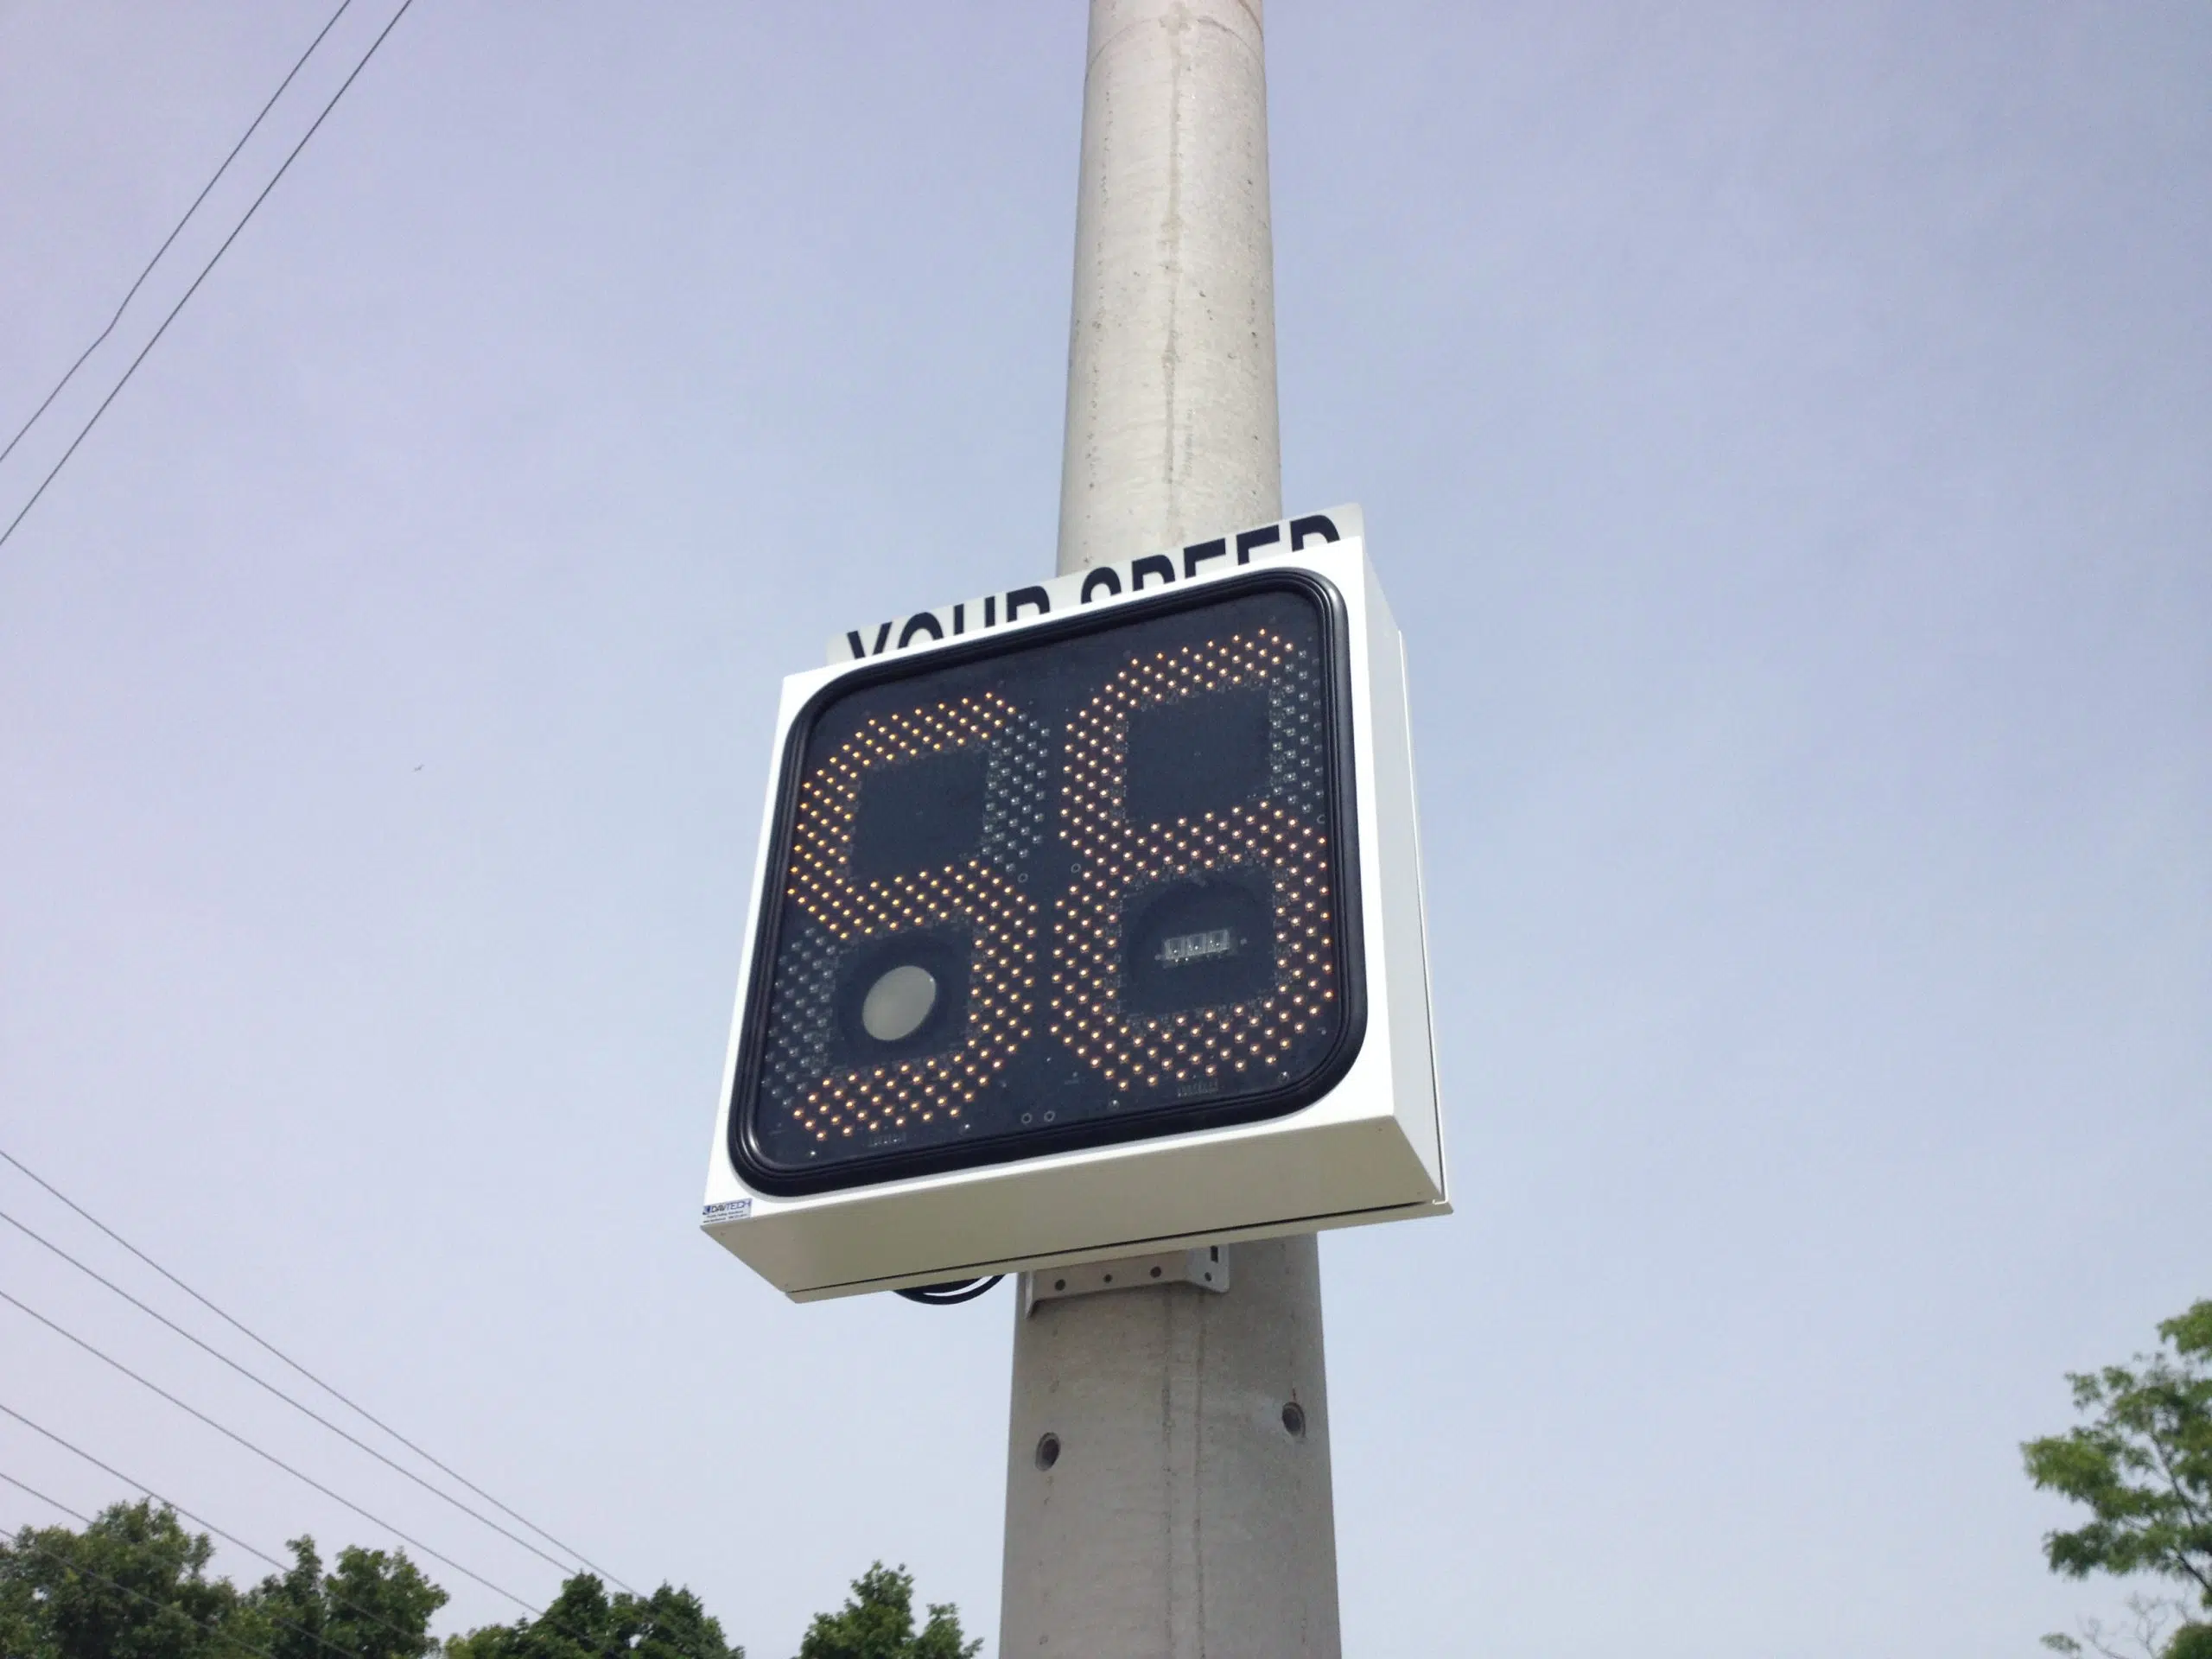 Speeders dominate weekly Belleville traffic numbers